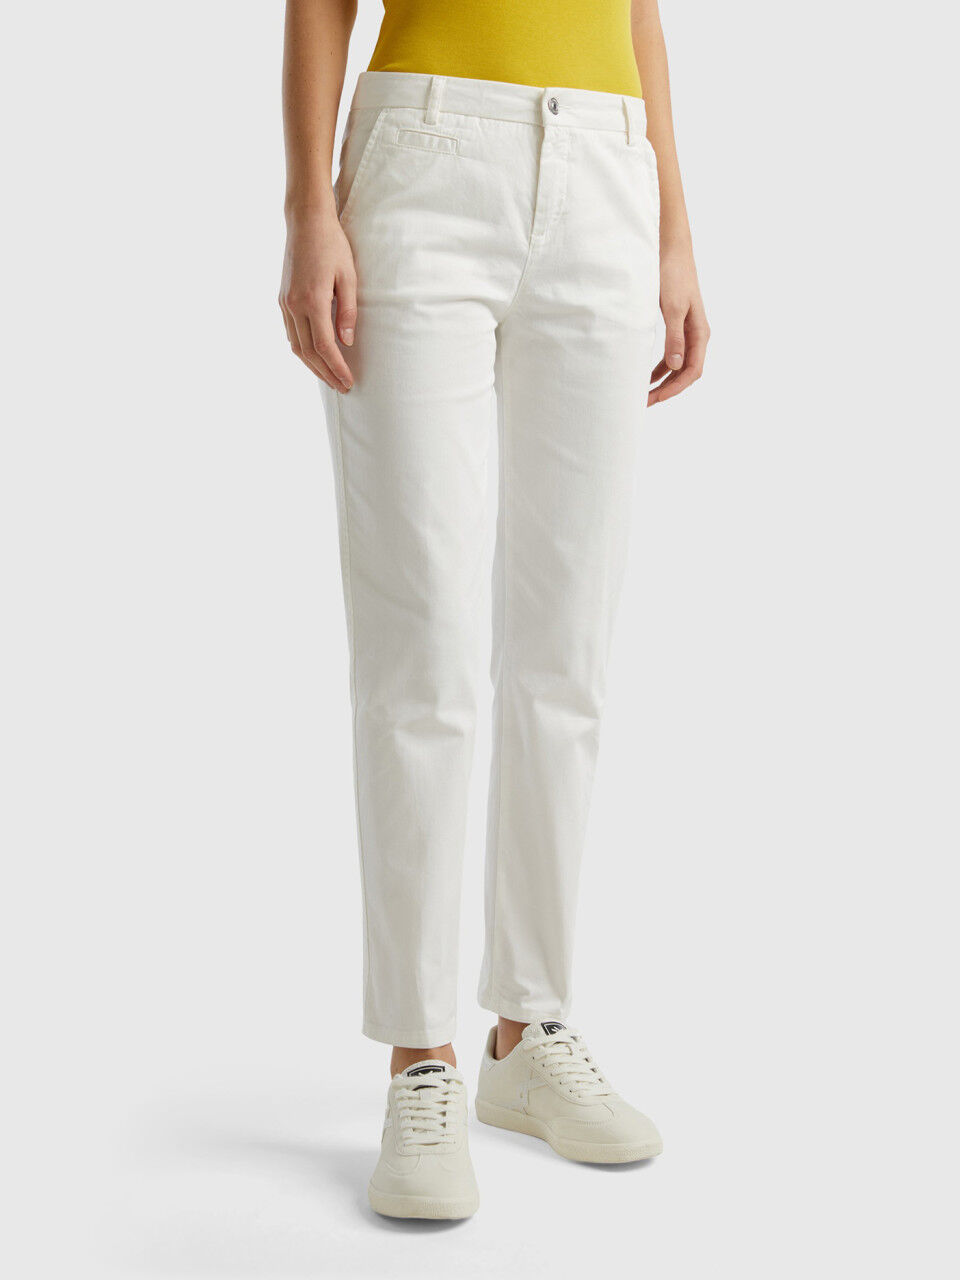 Formal Pants For men/ Slim Fit Pants/Official Formal Pants/White Plain Pants  Trousers